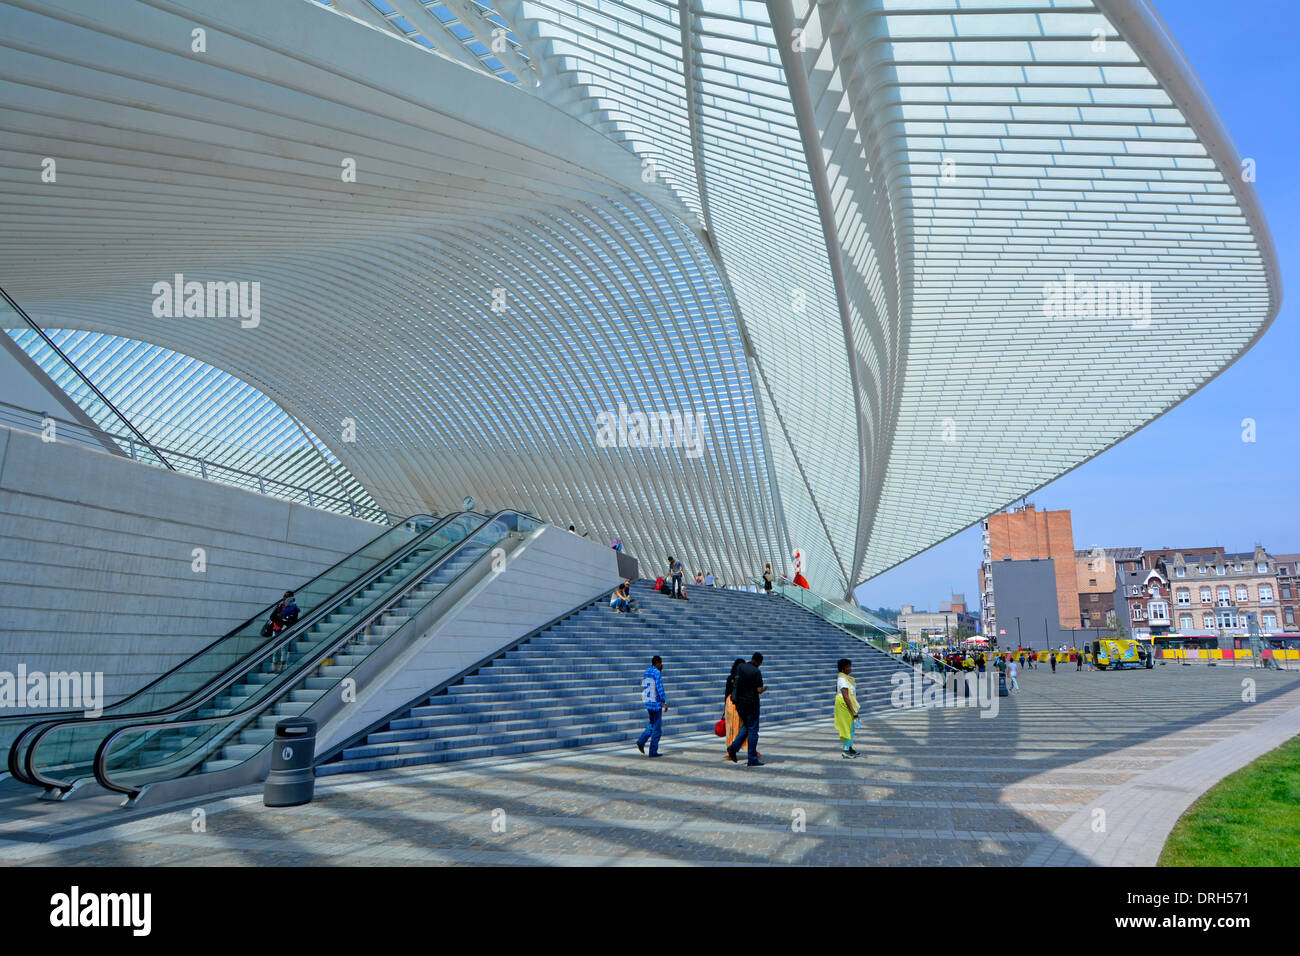 Die Außenseite des futuristischen Form moderne gläserne Decke und Dach Bahnhof & Eingang in Lüttich Belgien die Infrastruktur des öffentlichen Verkehrs Gebäude Stockfoto